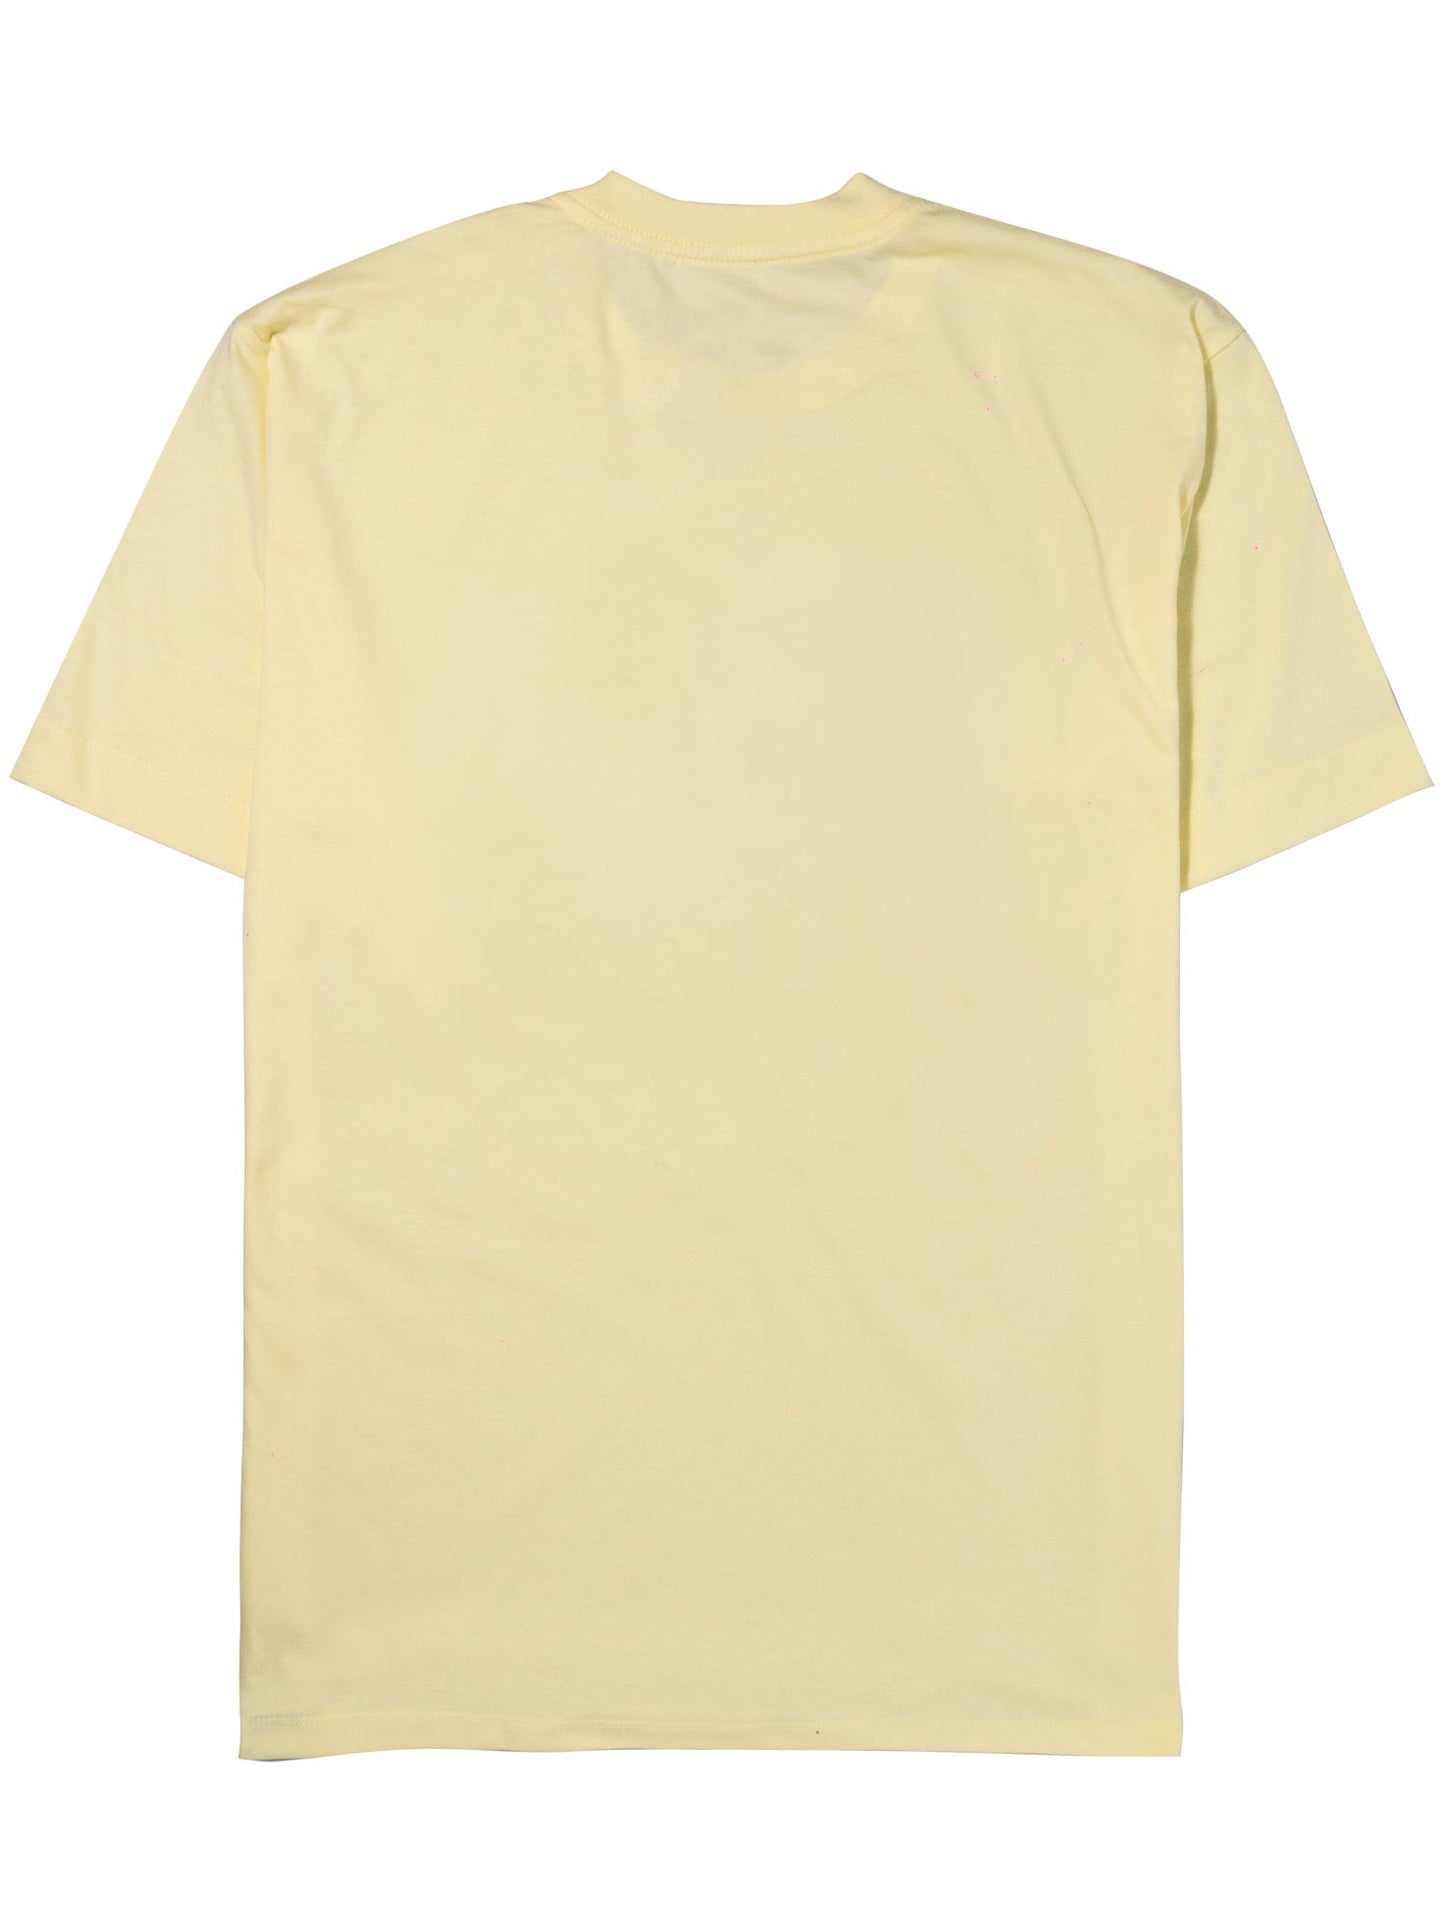 Camiseta-Future-Flag-Amarela-Costas